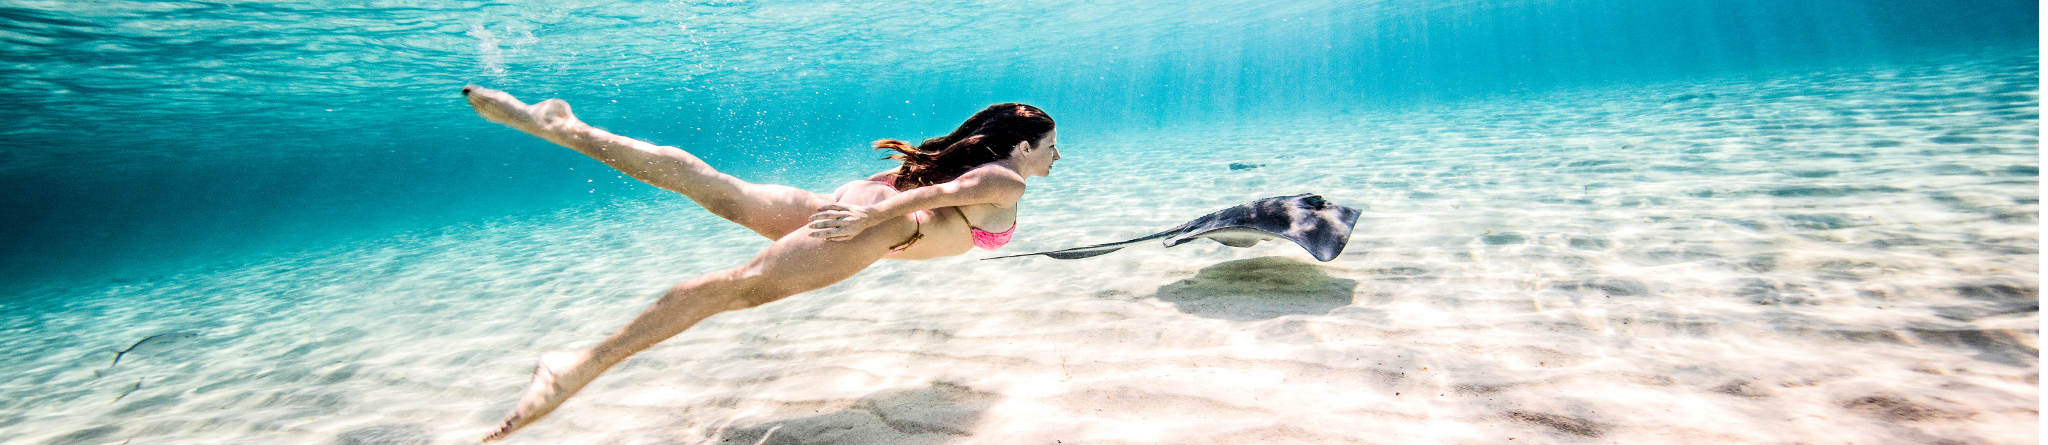 Une fille nage avec une raie dans l'océan